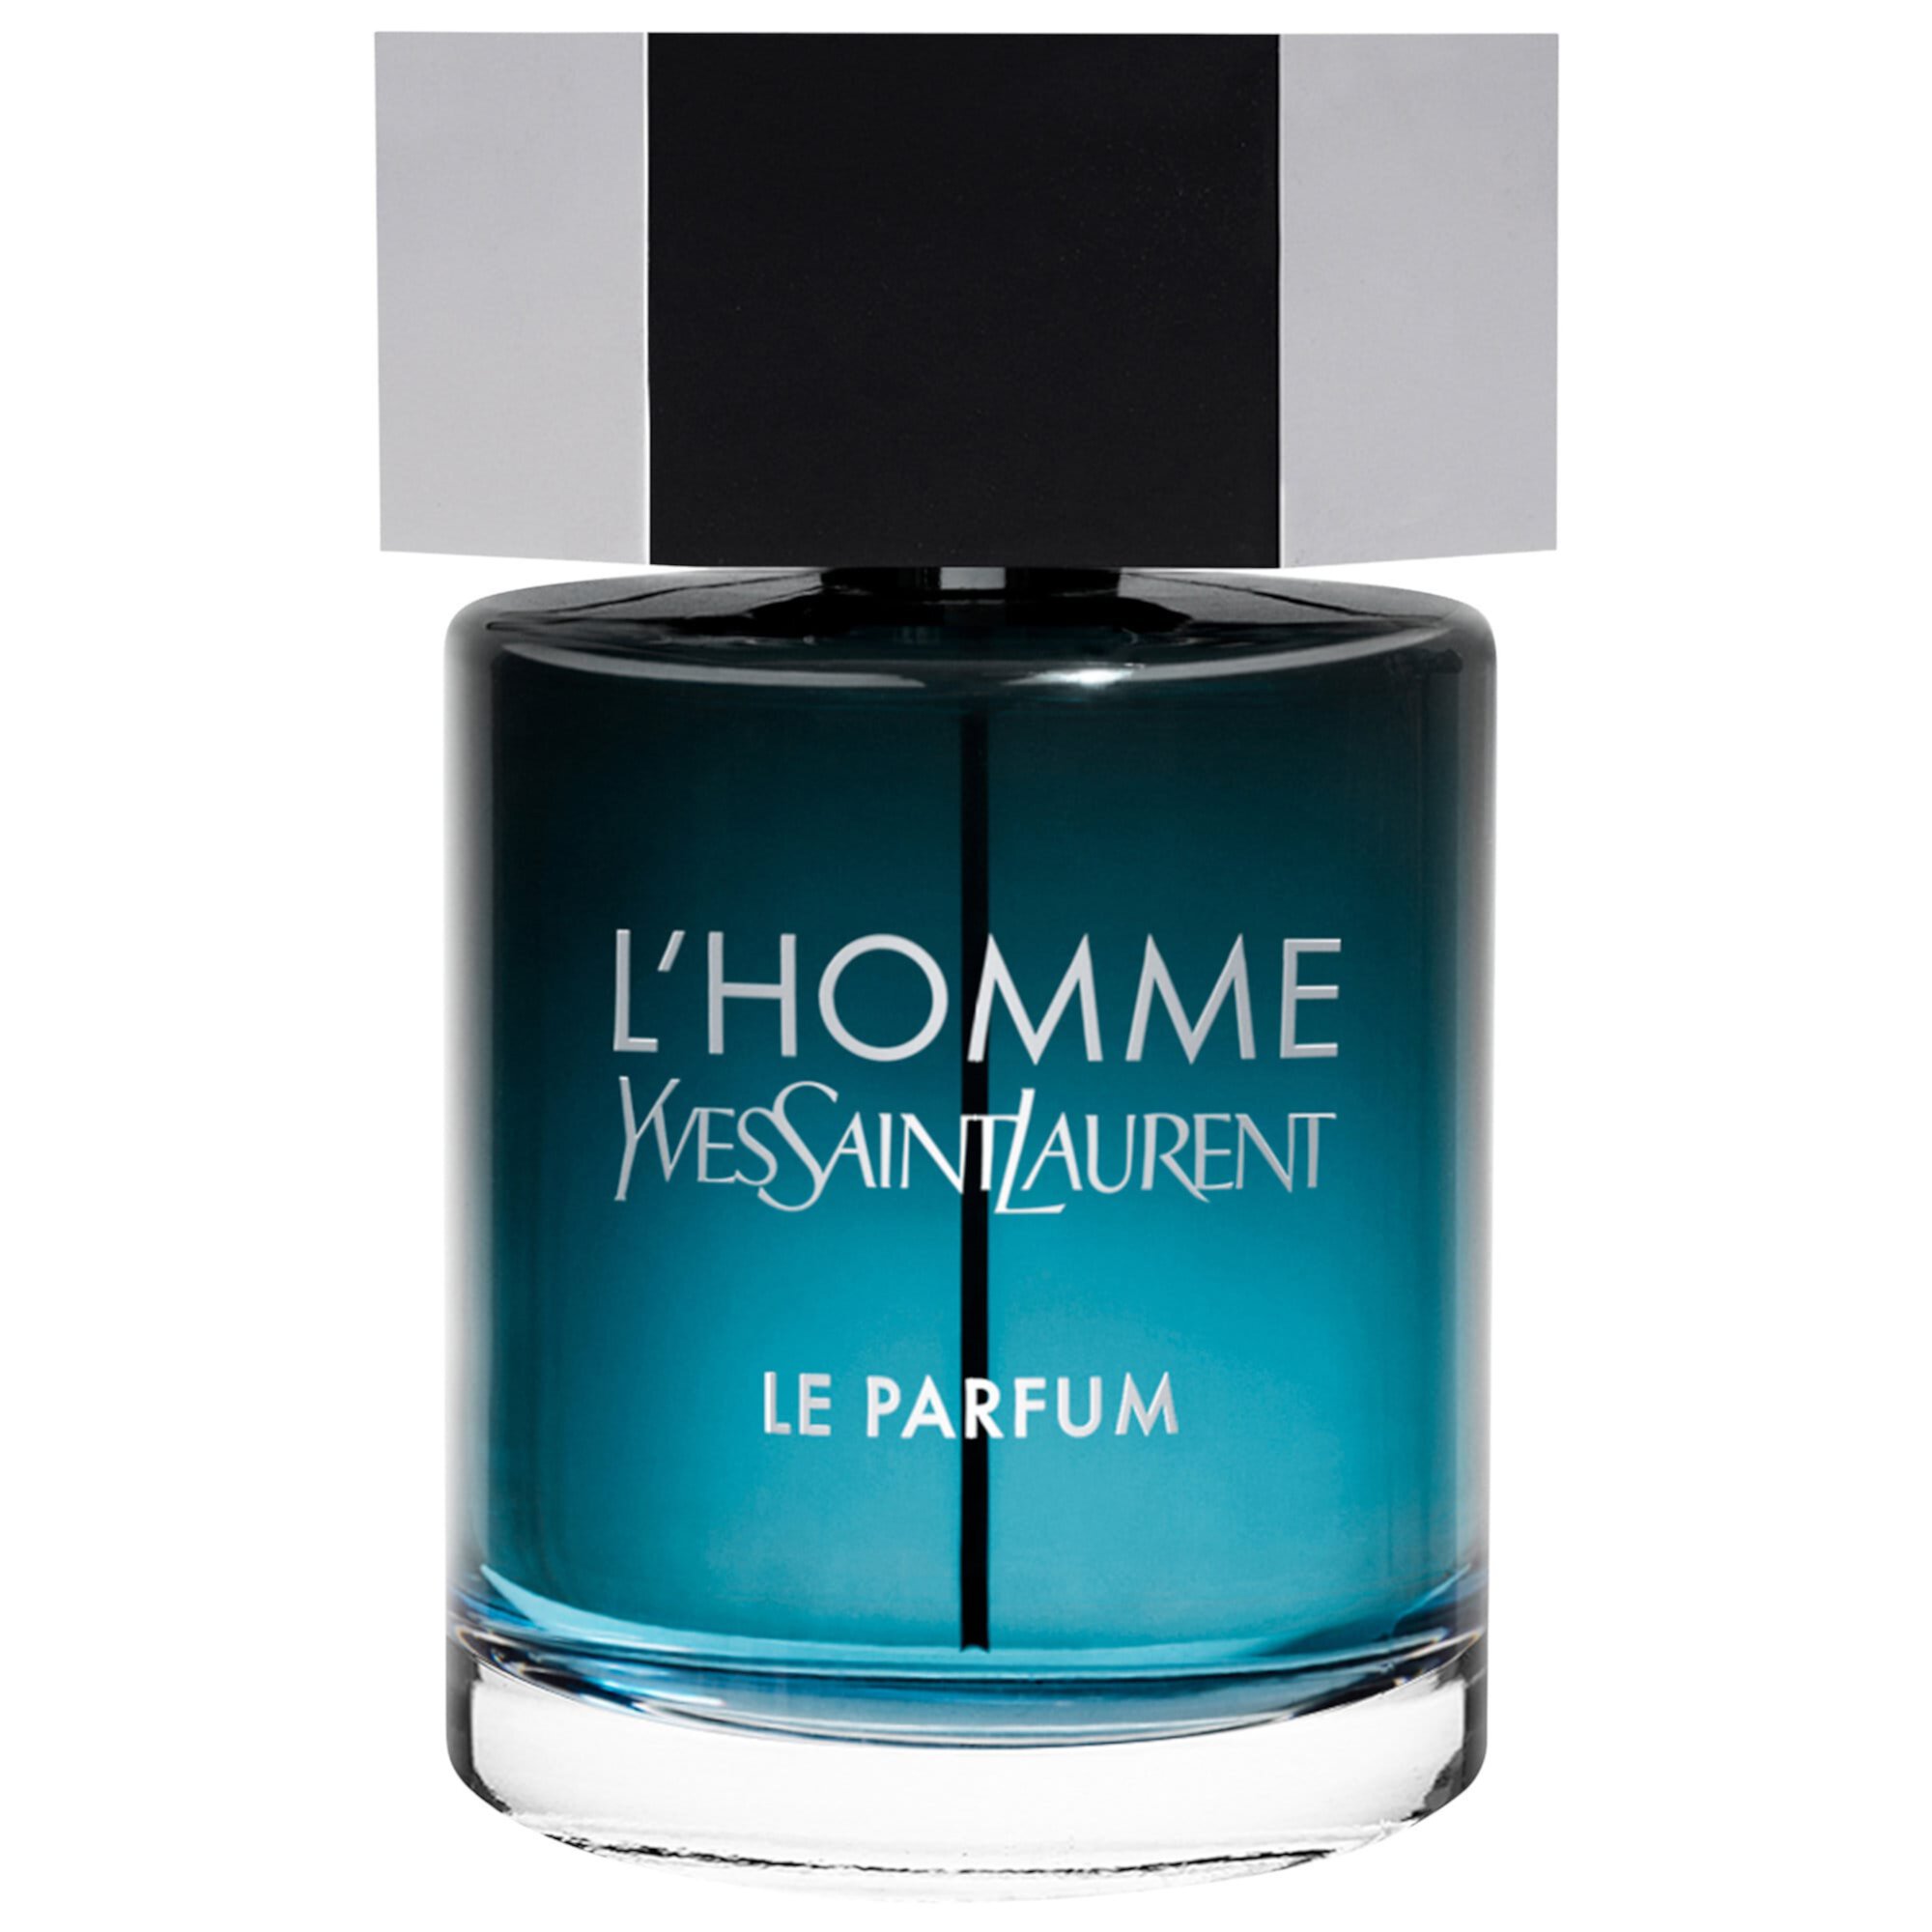 L'Homme Le Parfum Yves Saint Laurent